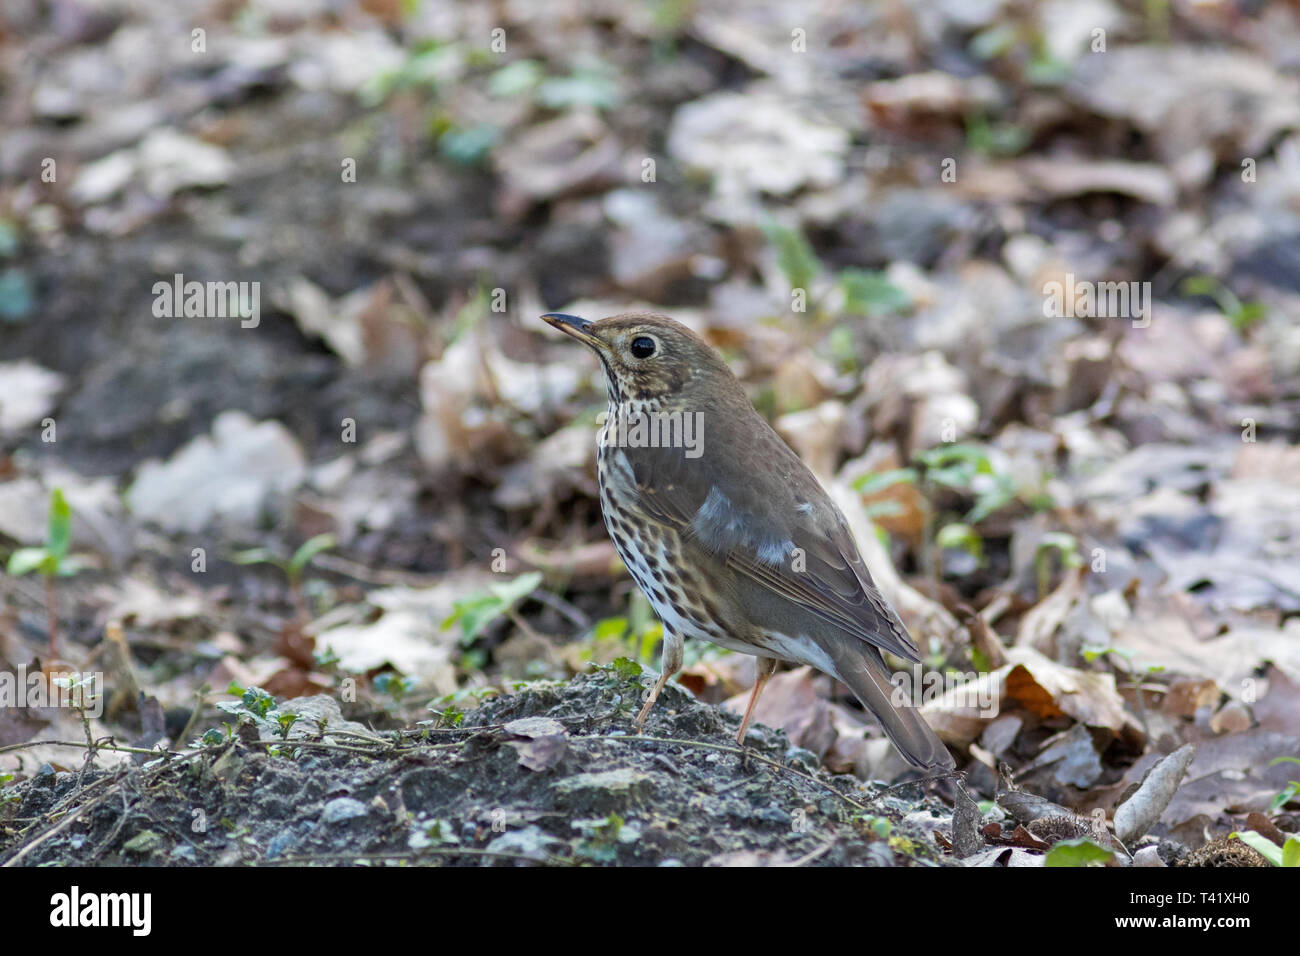 Song Thrush (Turdus philomelos). Landkreis Vechta, Visbek. Germany, Lower Saxony. Stock Photo